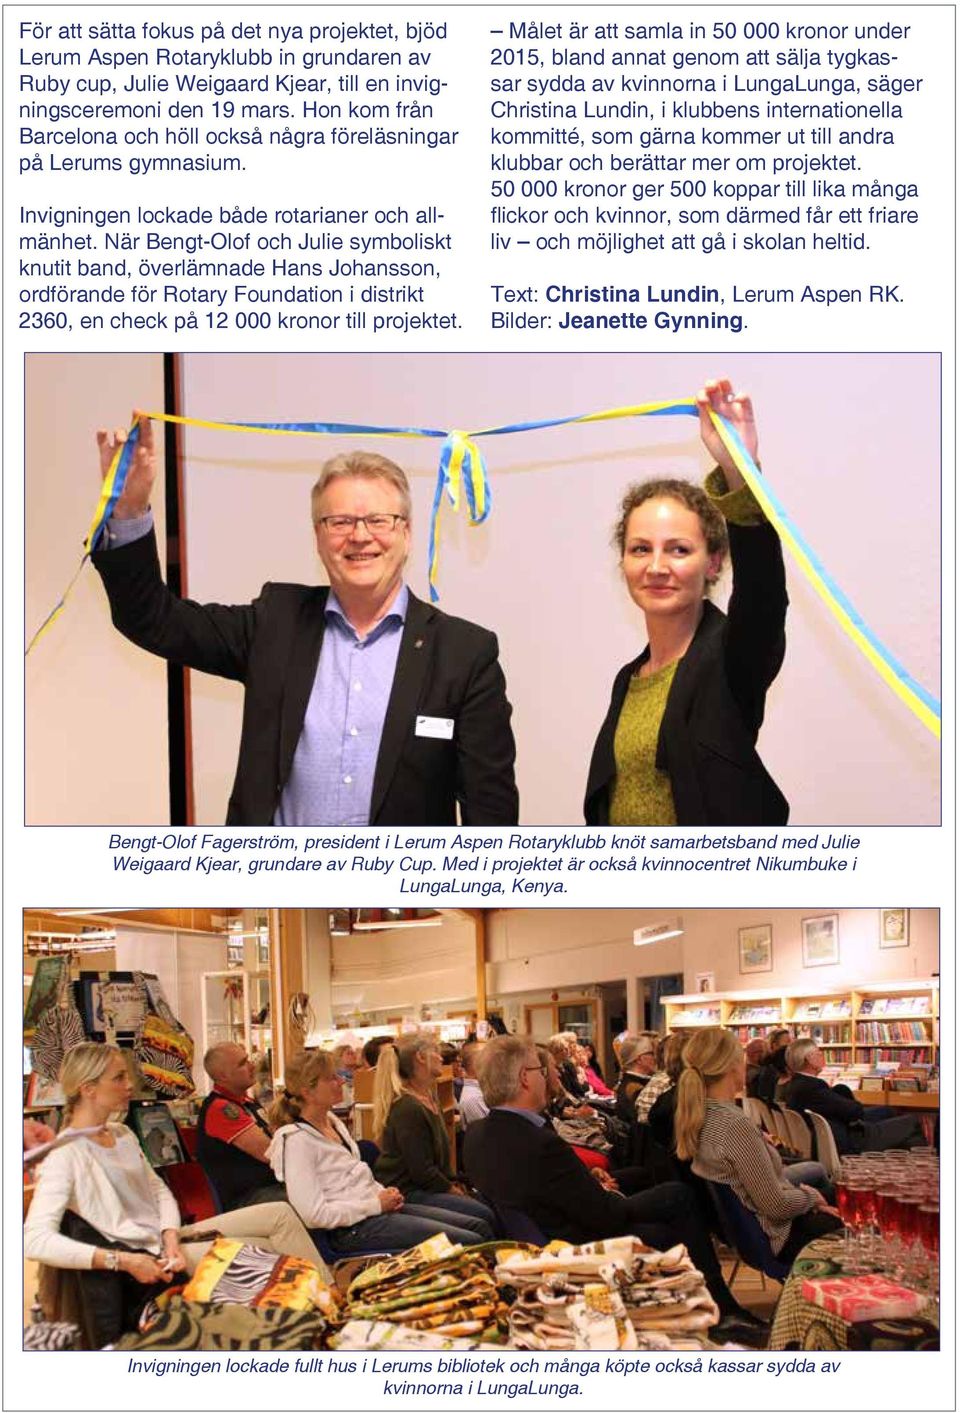 När Bengt-Olof och Julie symboliskt knutit band, överlämnade Hans Johansson, ordförande för Rotary Foundation i distrikt 2360, en check på 12 000 kronor till projektet.